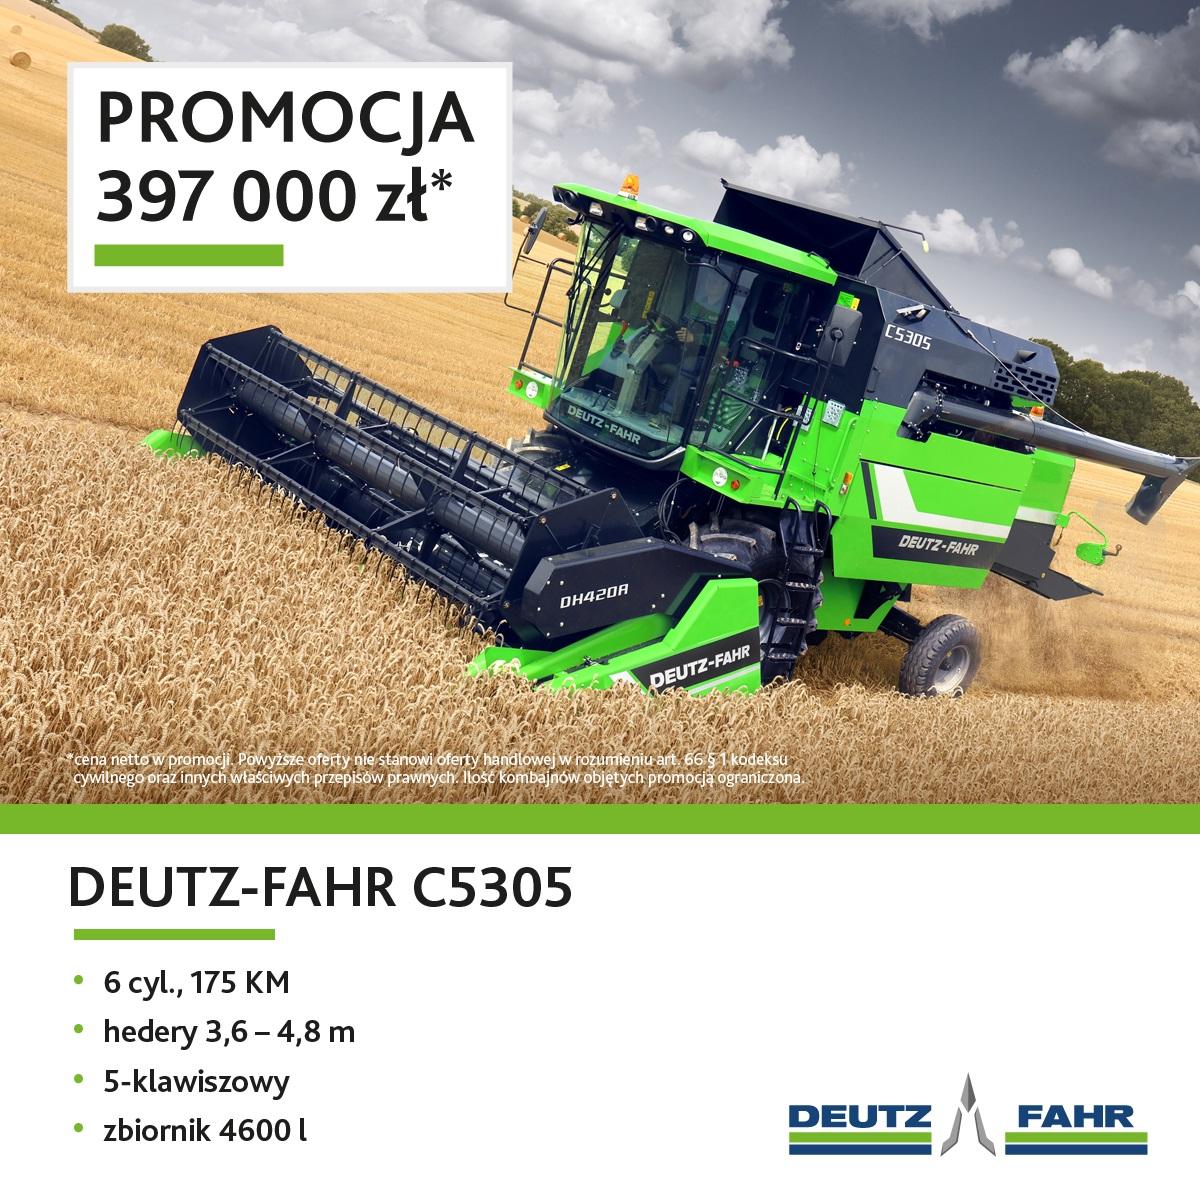 DEUTZ-FAHR-C5305-promo1-1200x1200